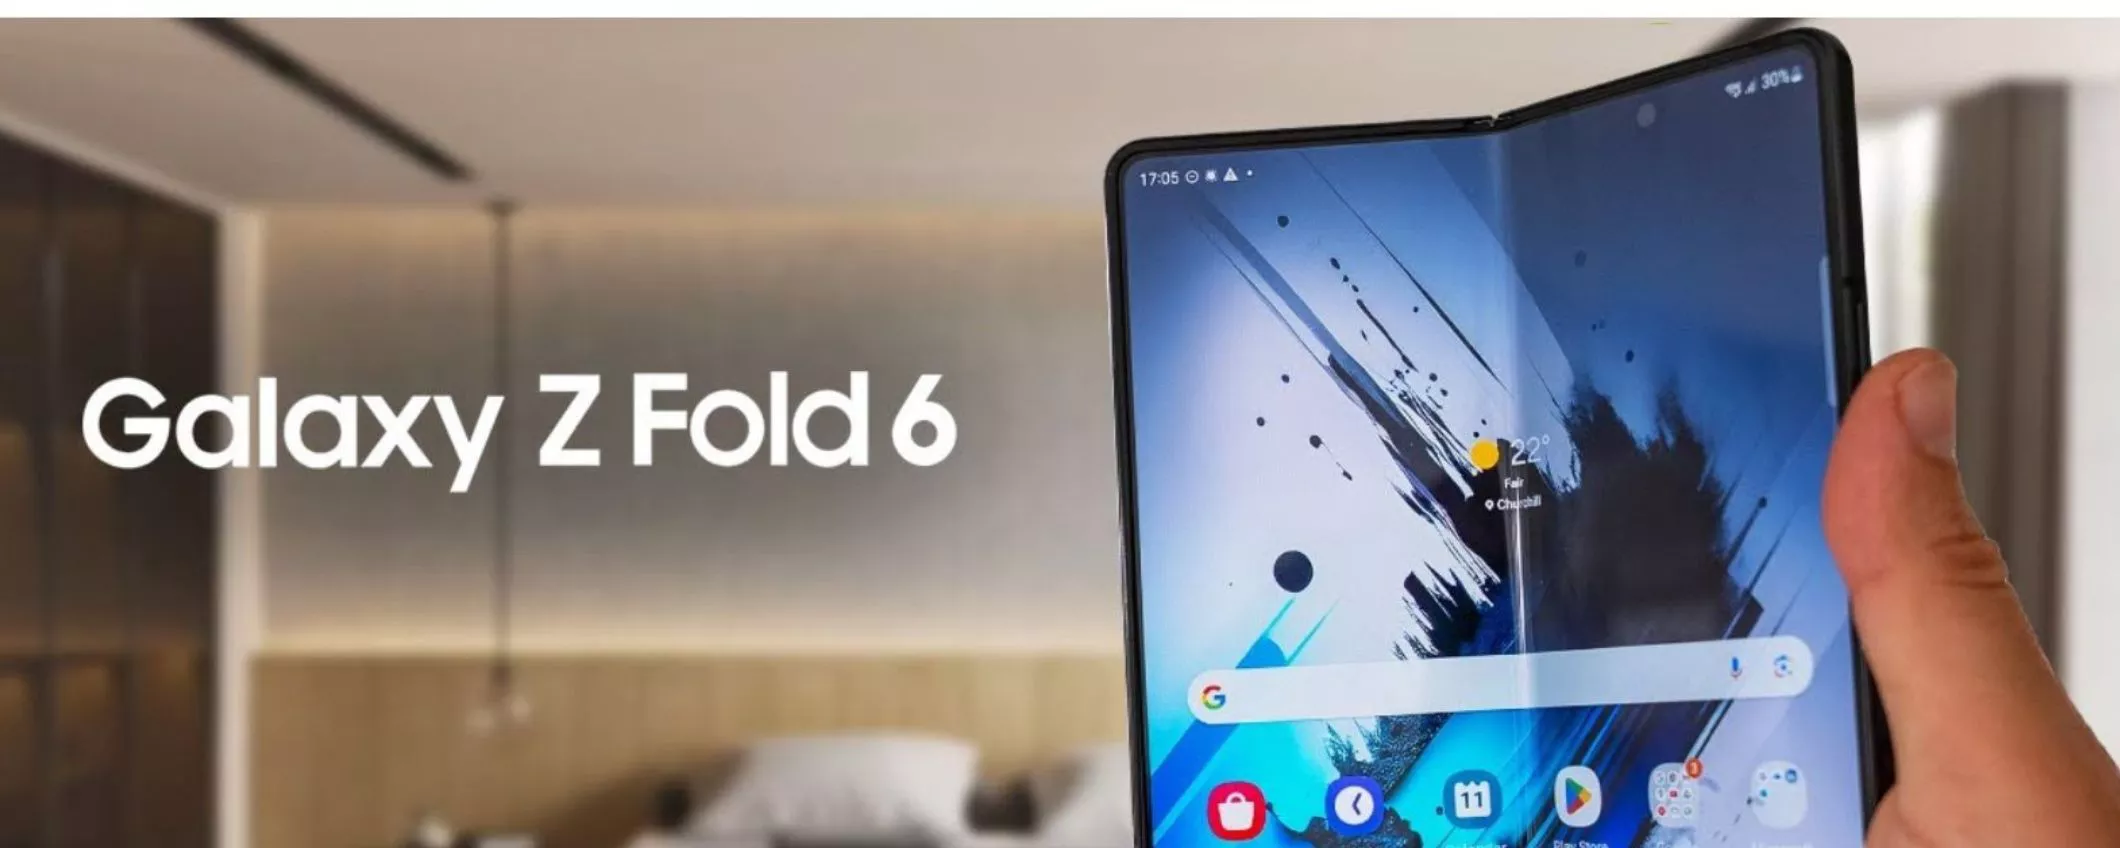 Samsung Galaxy Z Fold 6: è in arrivo una versione slim?